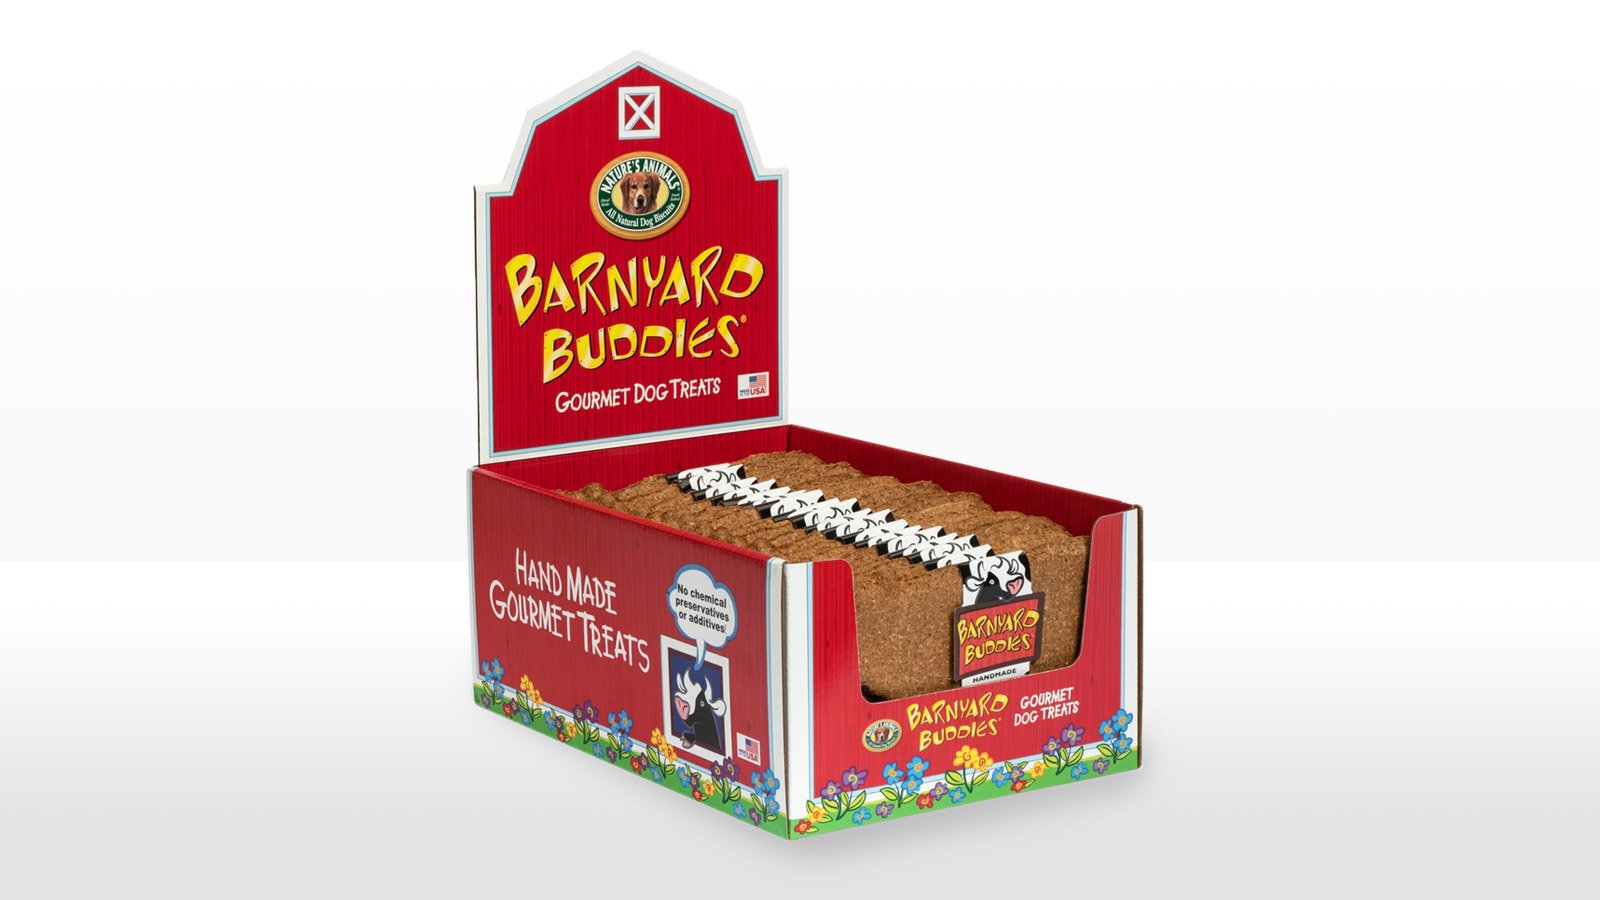 Barnyard Buddies gourmet dog treats display box